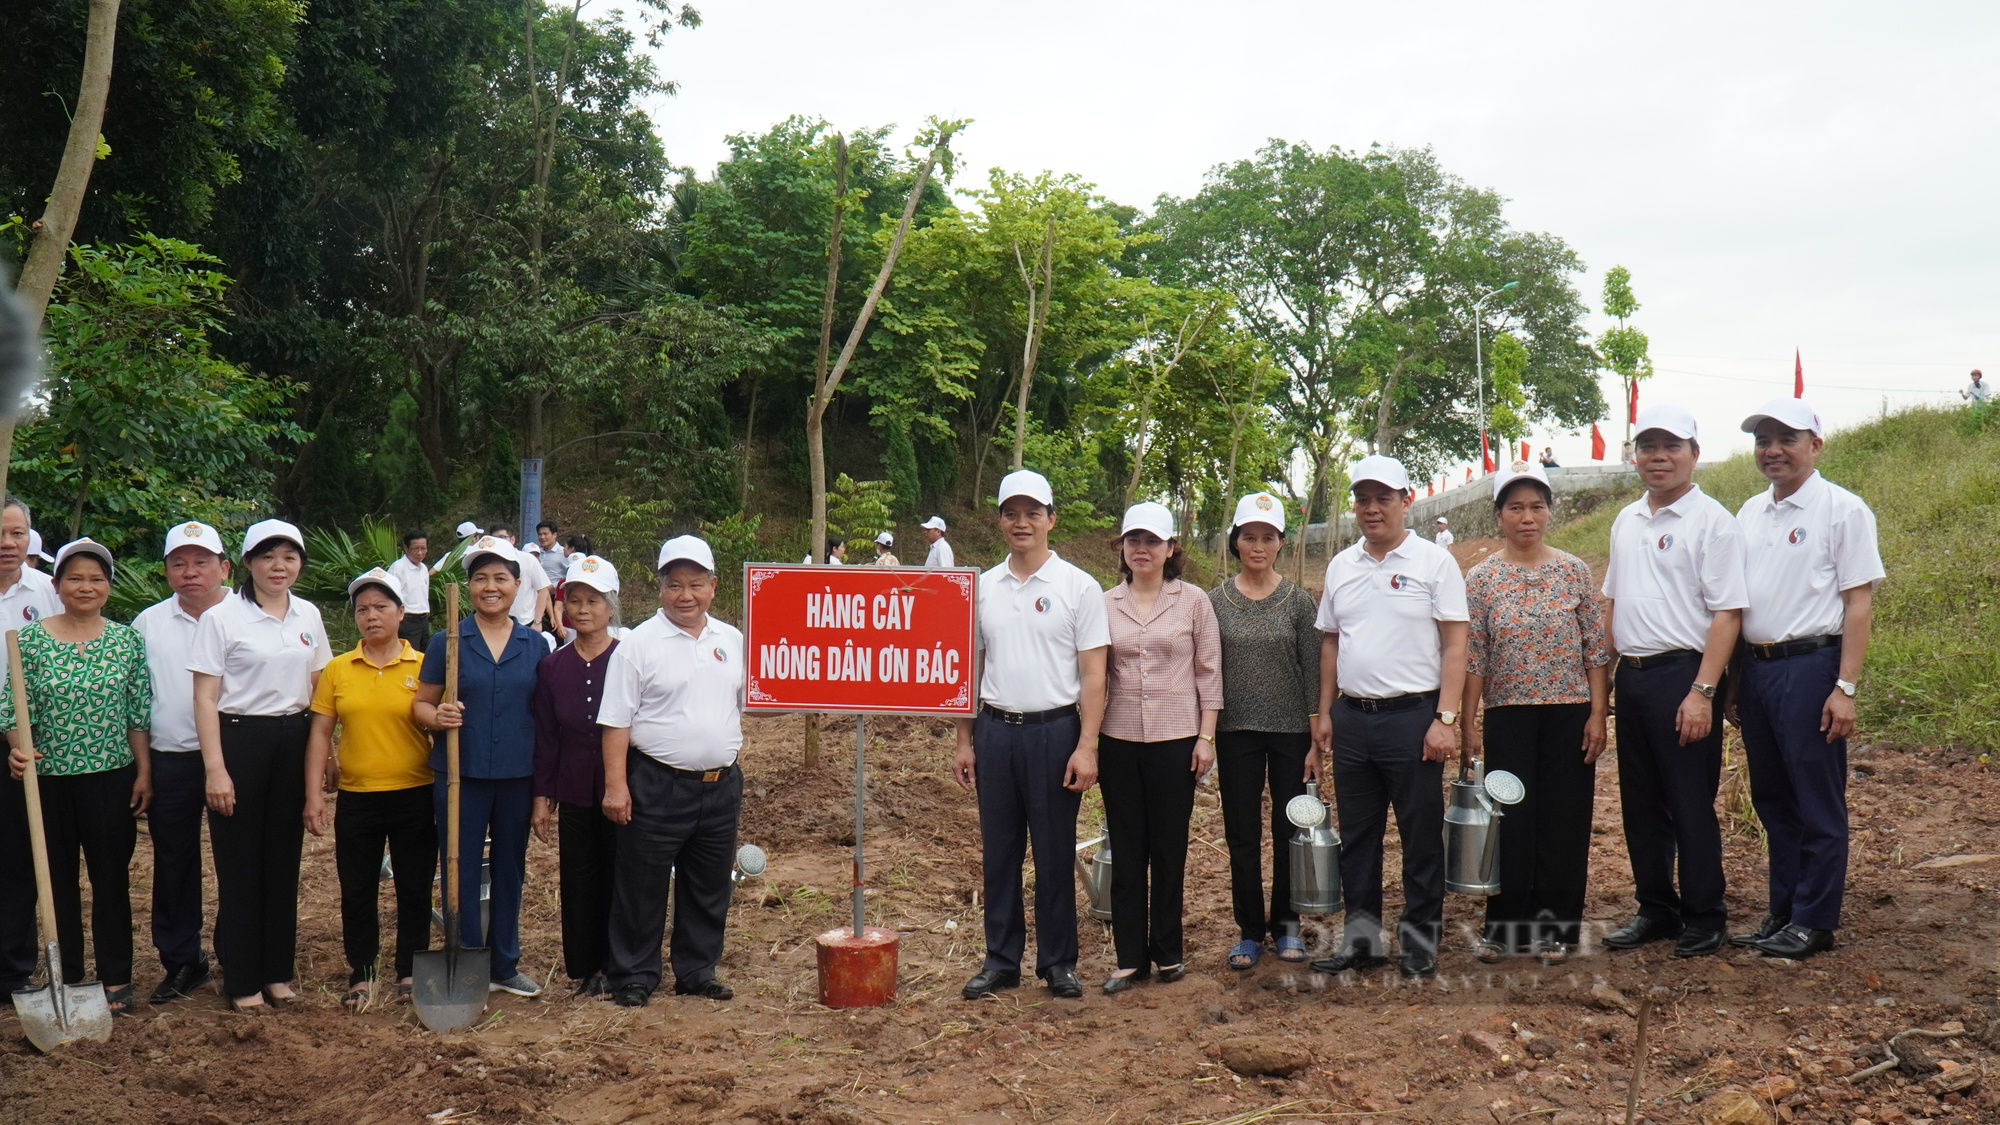 Trung ương Hội Nông dân Việt Nam cùng Bộ TNMT, tỉnh Bắc Ninh phát động Chiến dịch làm cho thế giới sạch hơn - Ảnh 4.